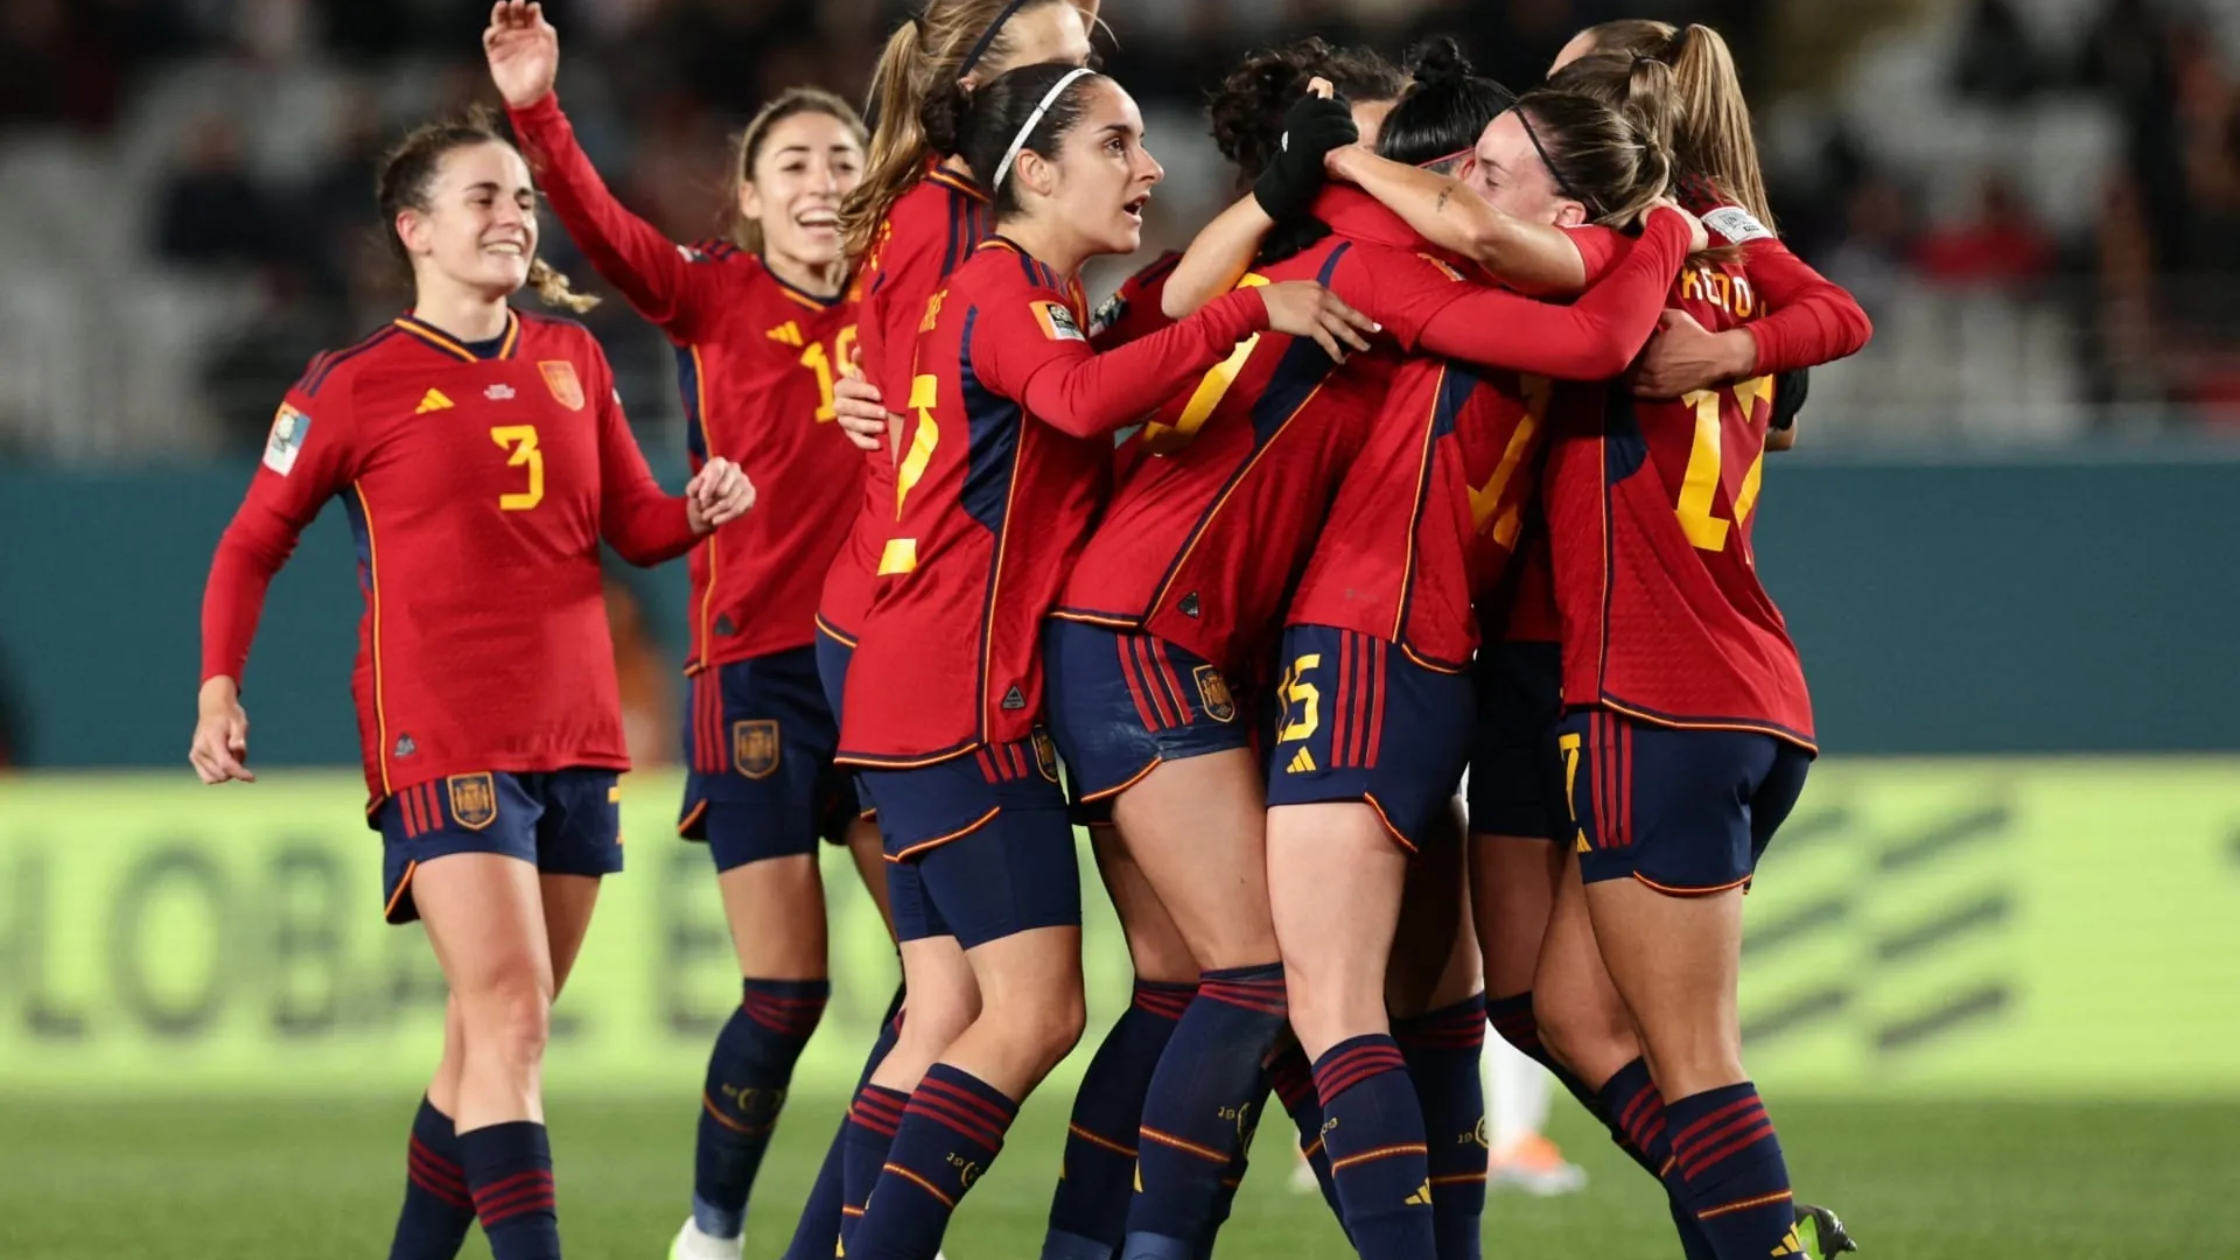 Espanha comemora vitória na Copa do Mundo Feminina, mas beijo polêmico rouba os holofotes